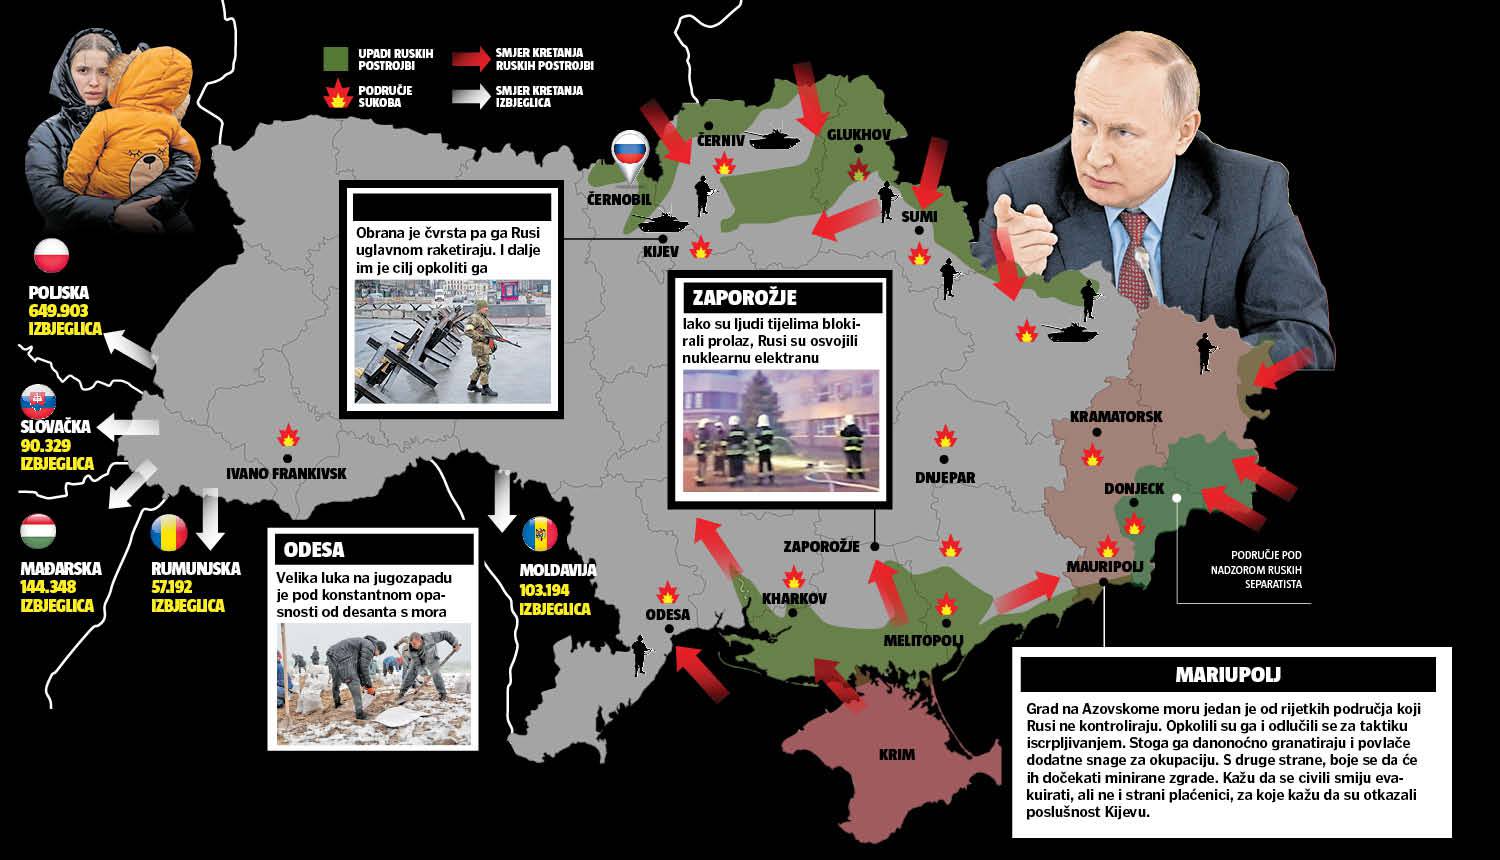 Putin je dovukao snage s istoka Rusije: Ovo je oružje kojim Rusi napadaju - avioni, tenkovi...